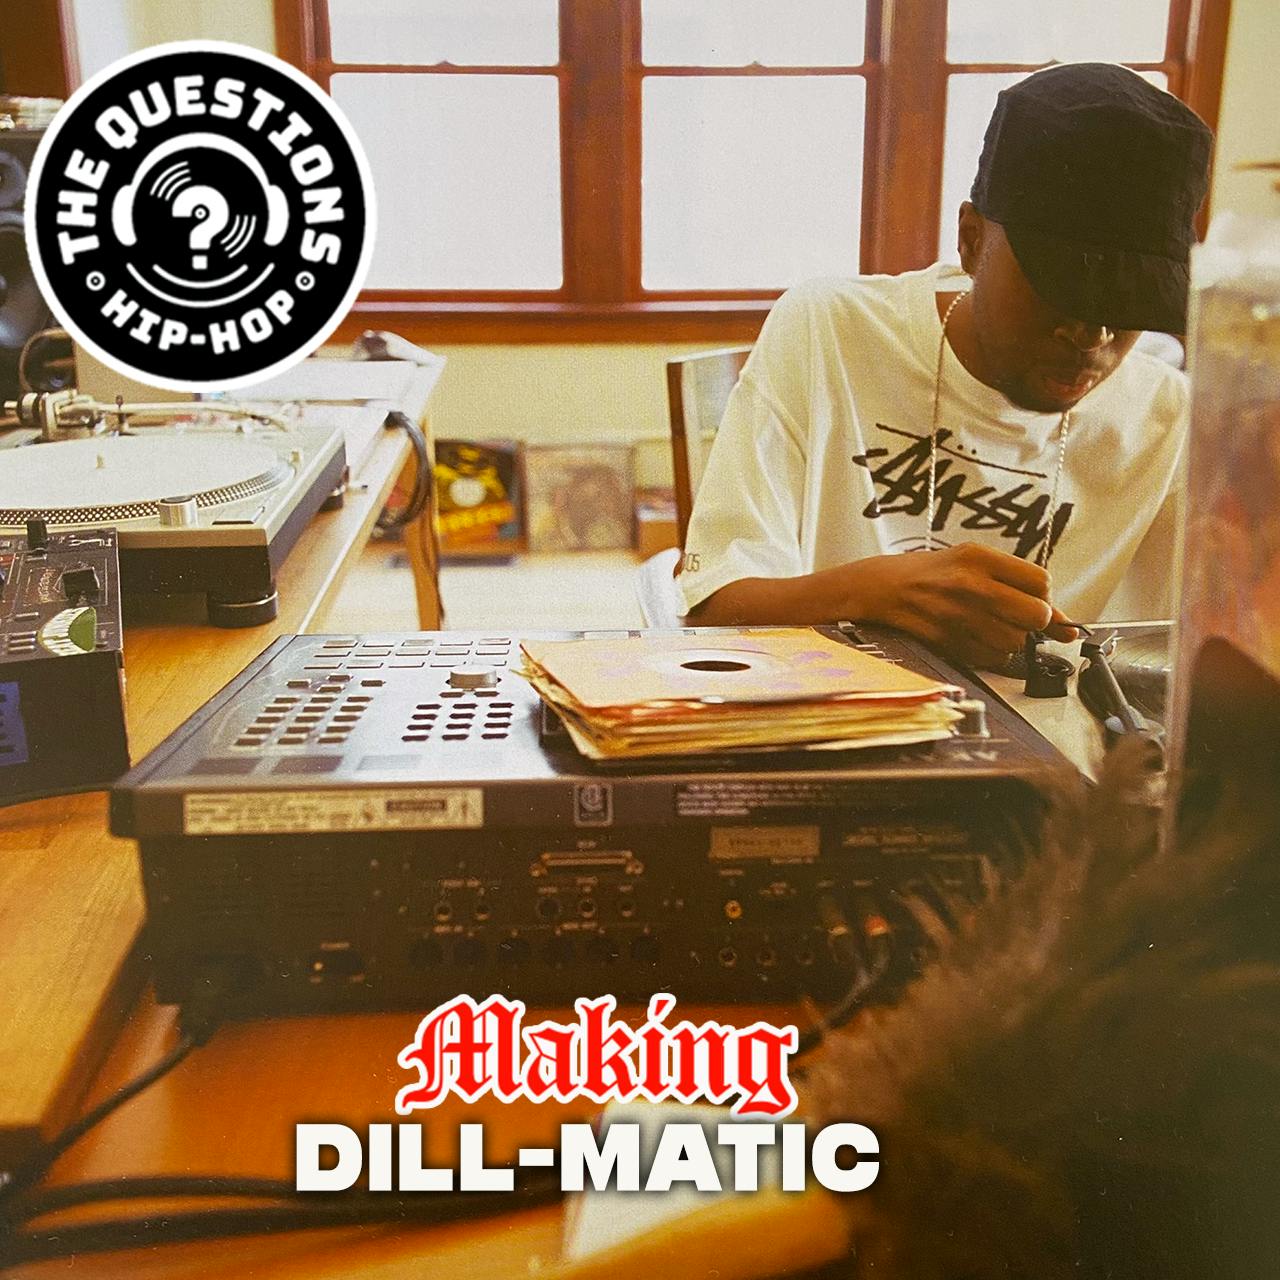 Making Dill-Matic (J DIlla Tribute)